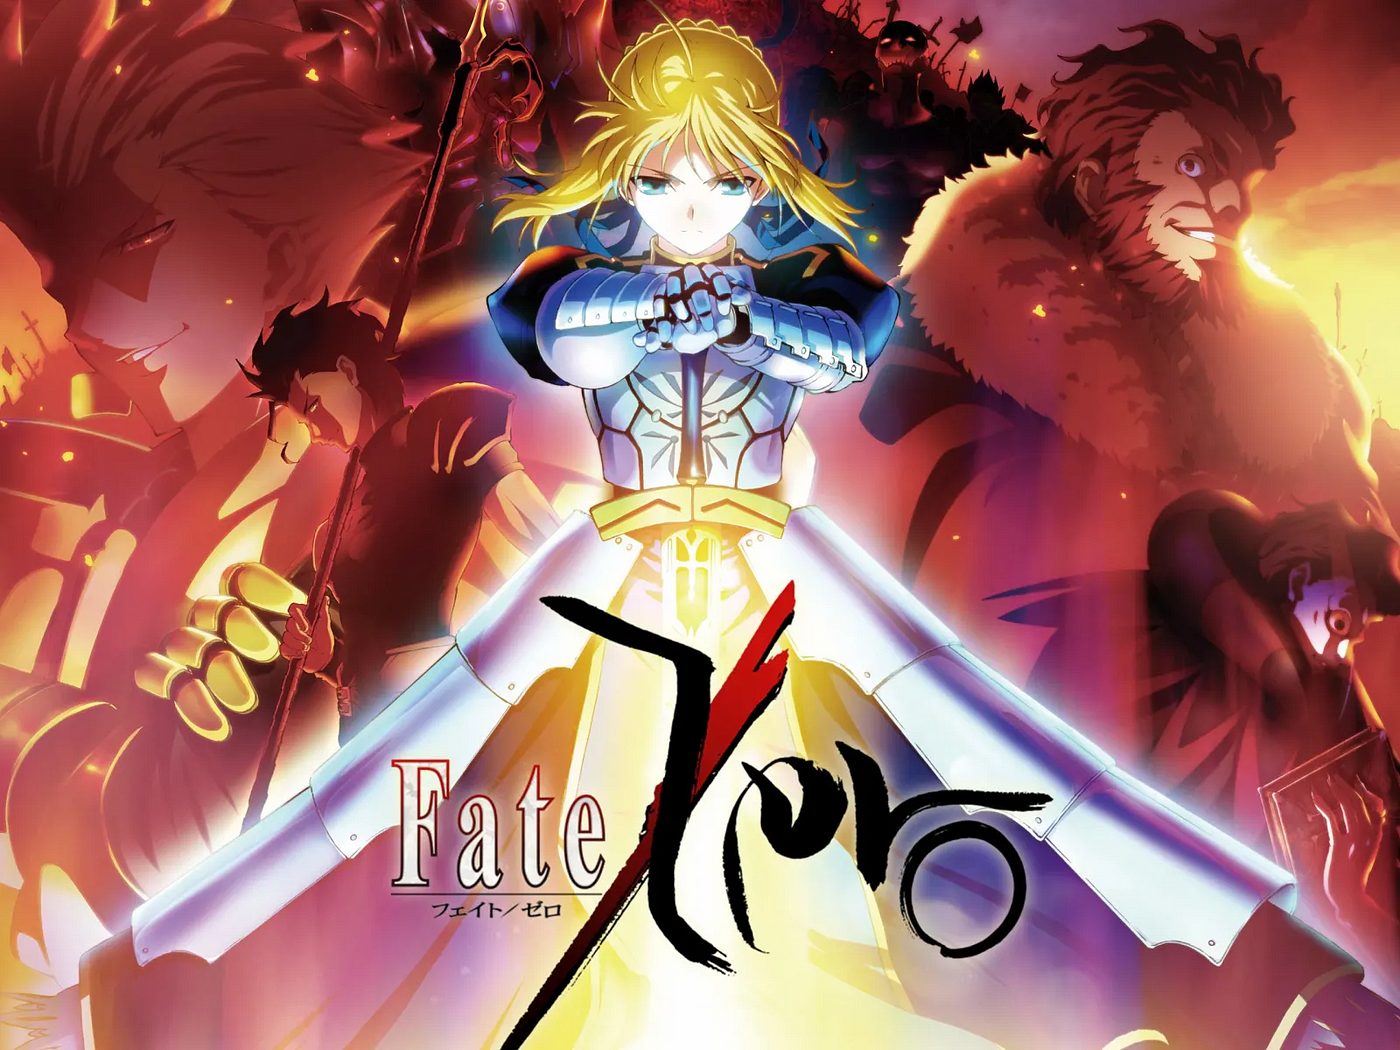 FATE E SUAS ROTAS #1 - Fate/Zero Fate/Stay Night Fate/Stay Night